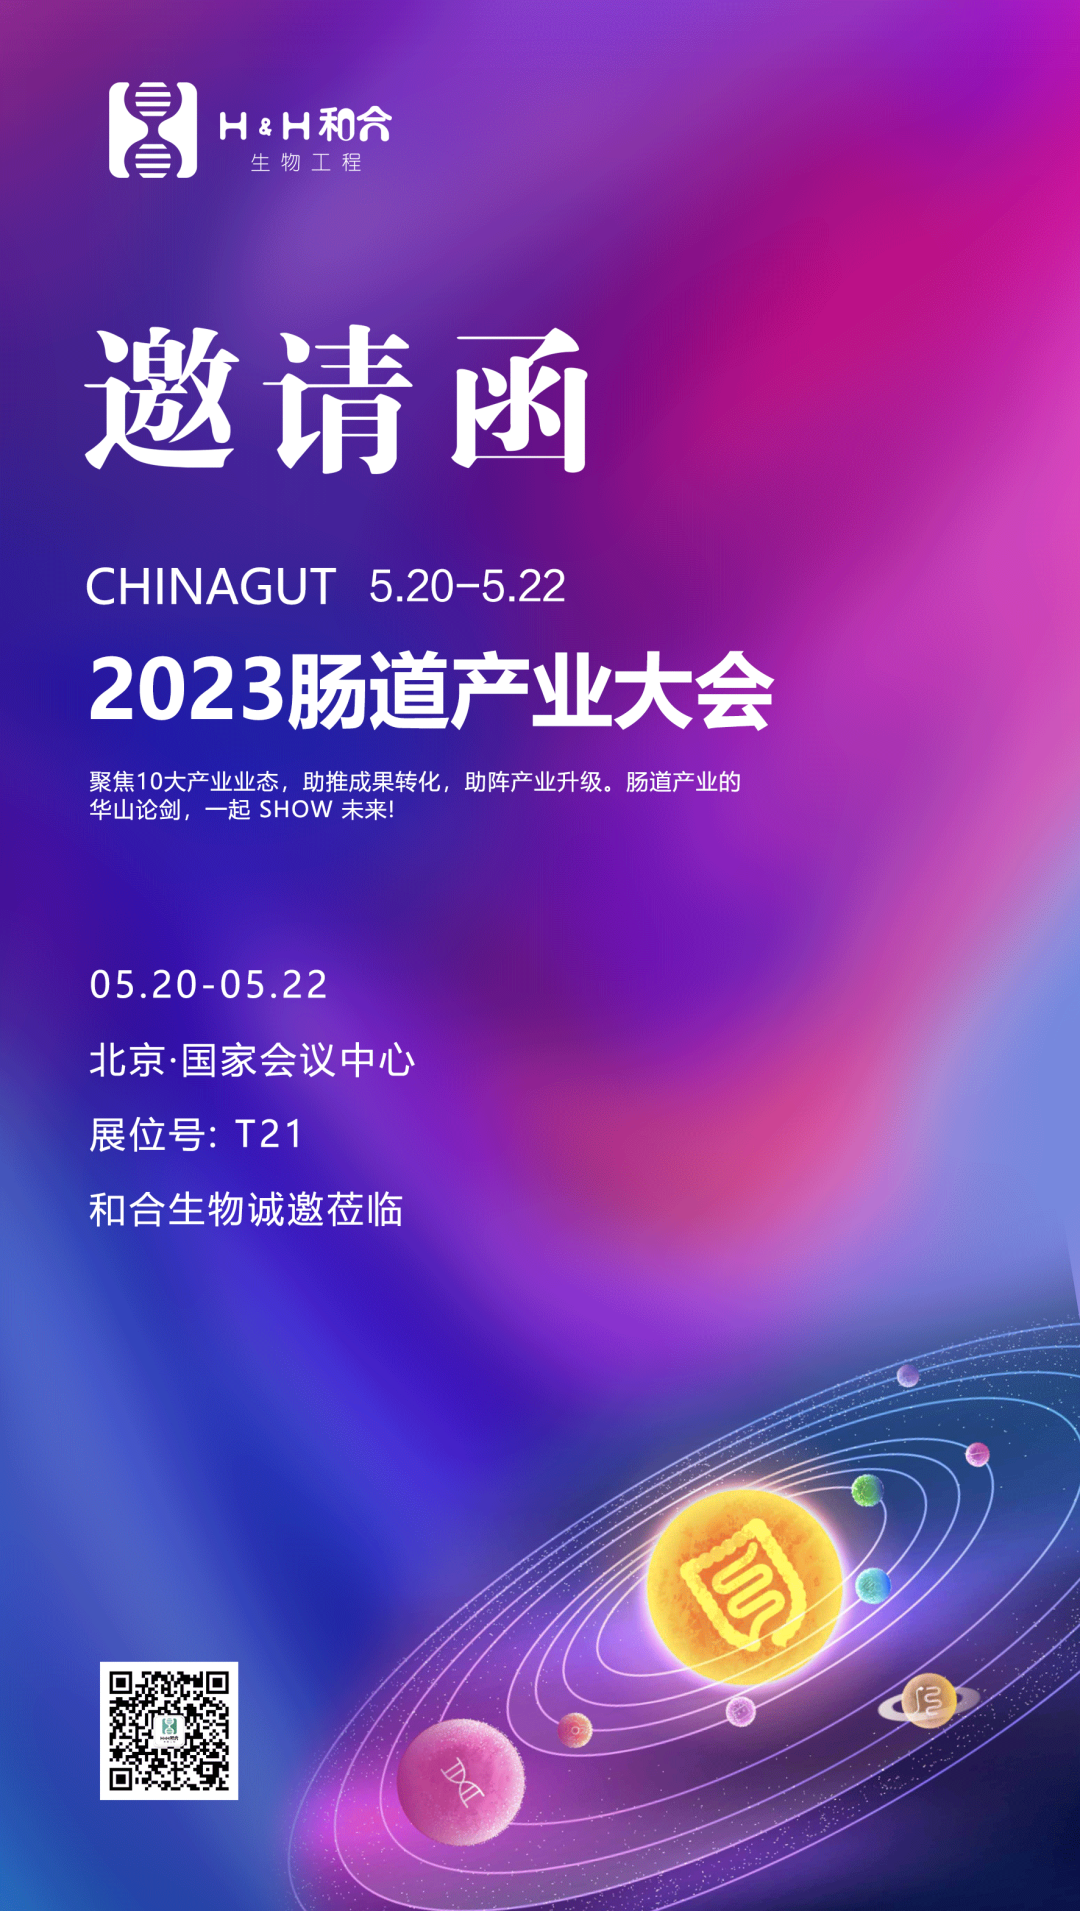 相约北京| 和合生物诚邀您参加2023中国肠道大会